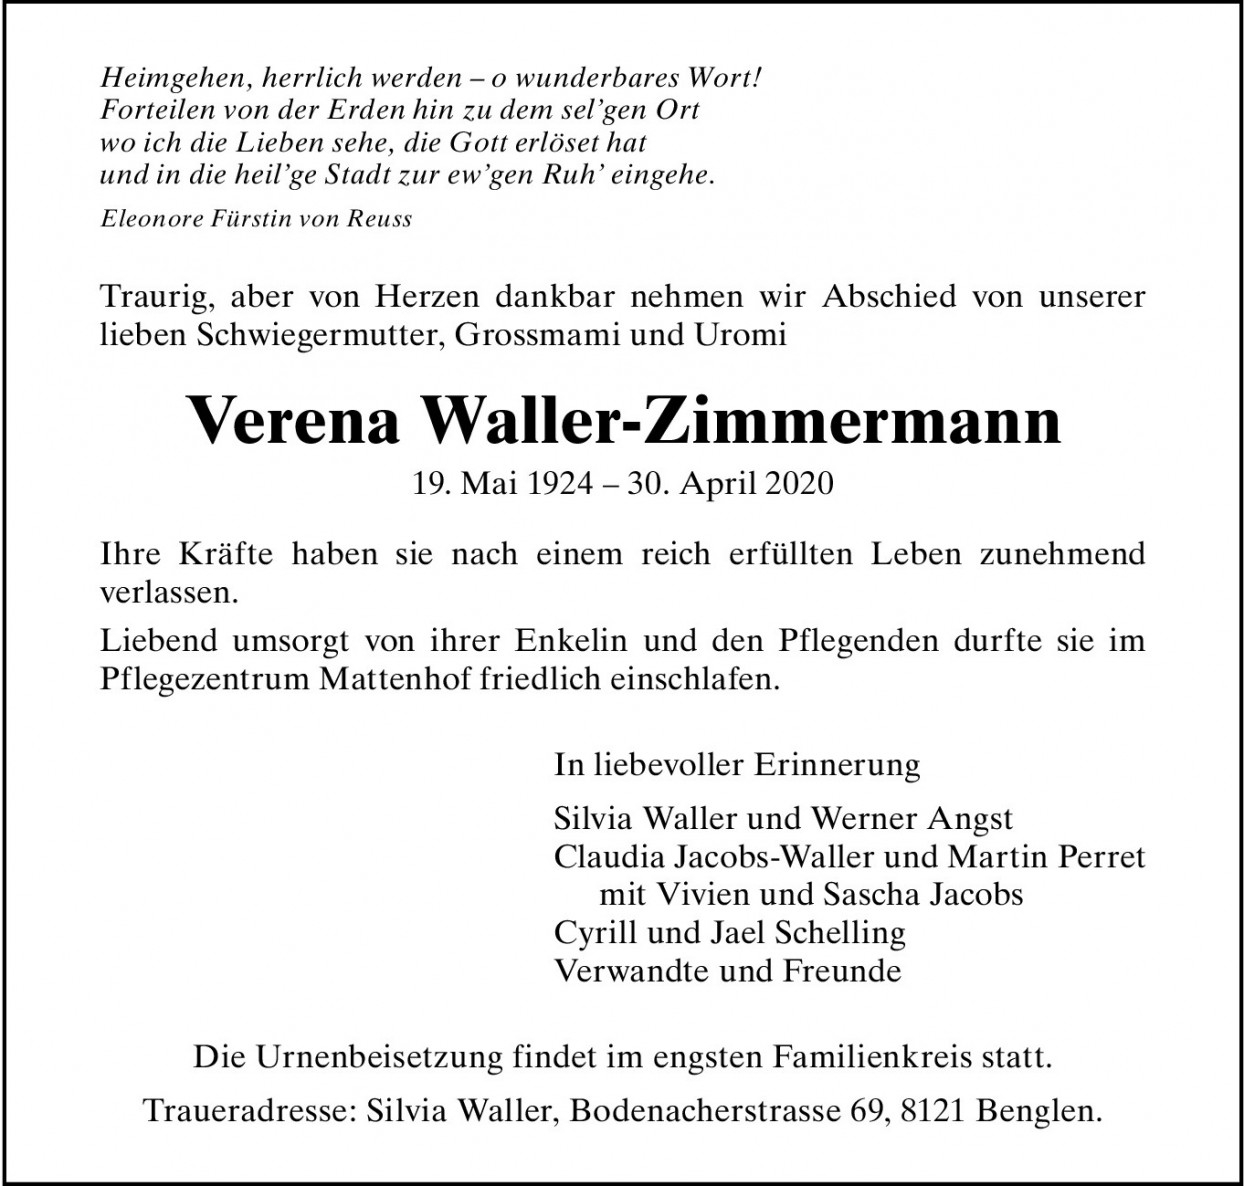 Verena Waller-Zimmermann